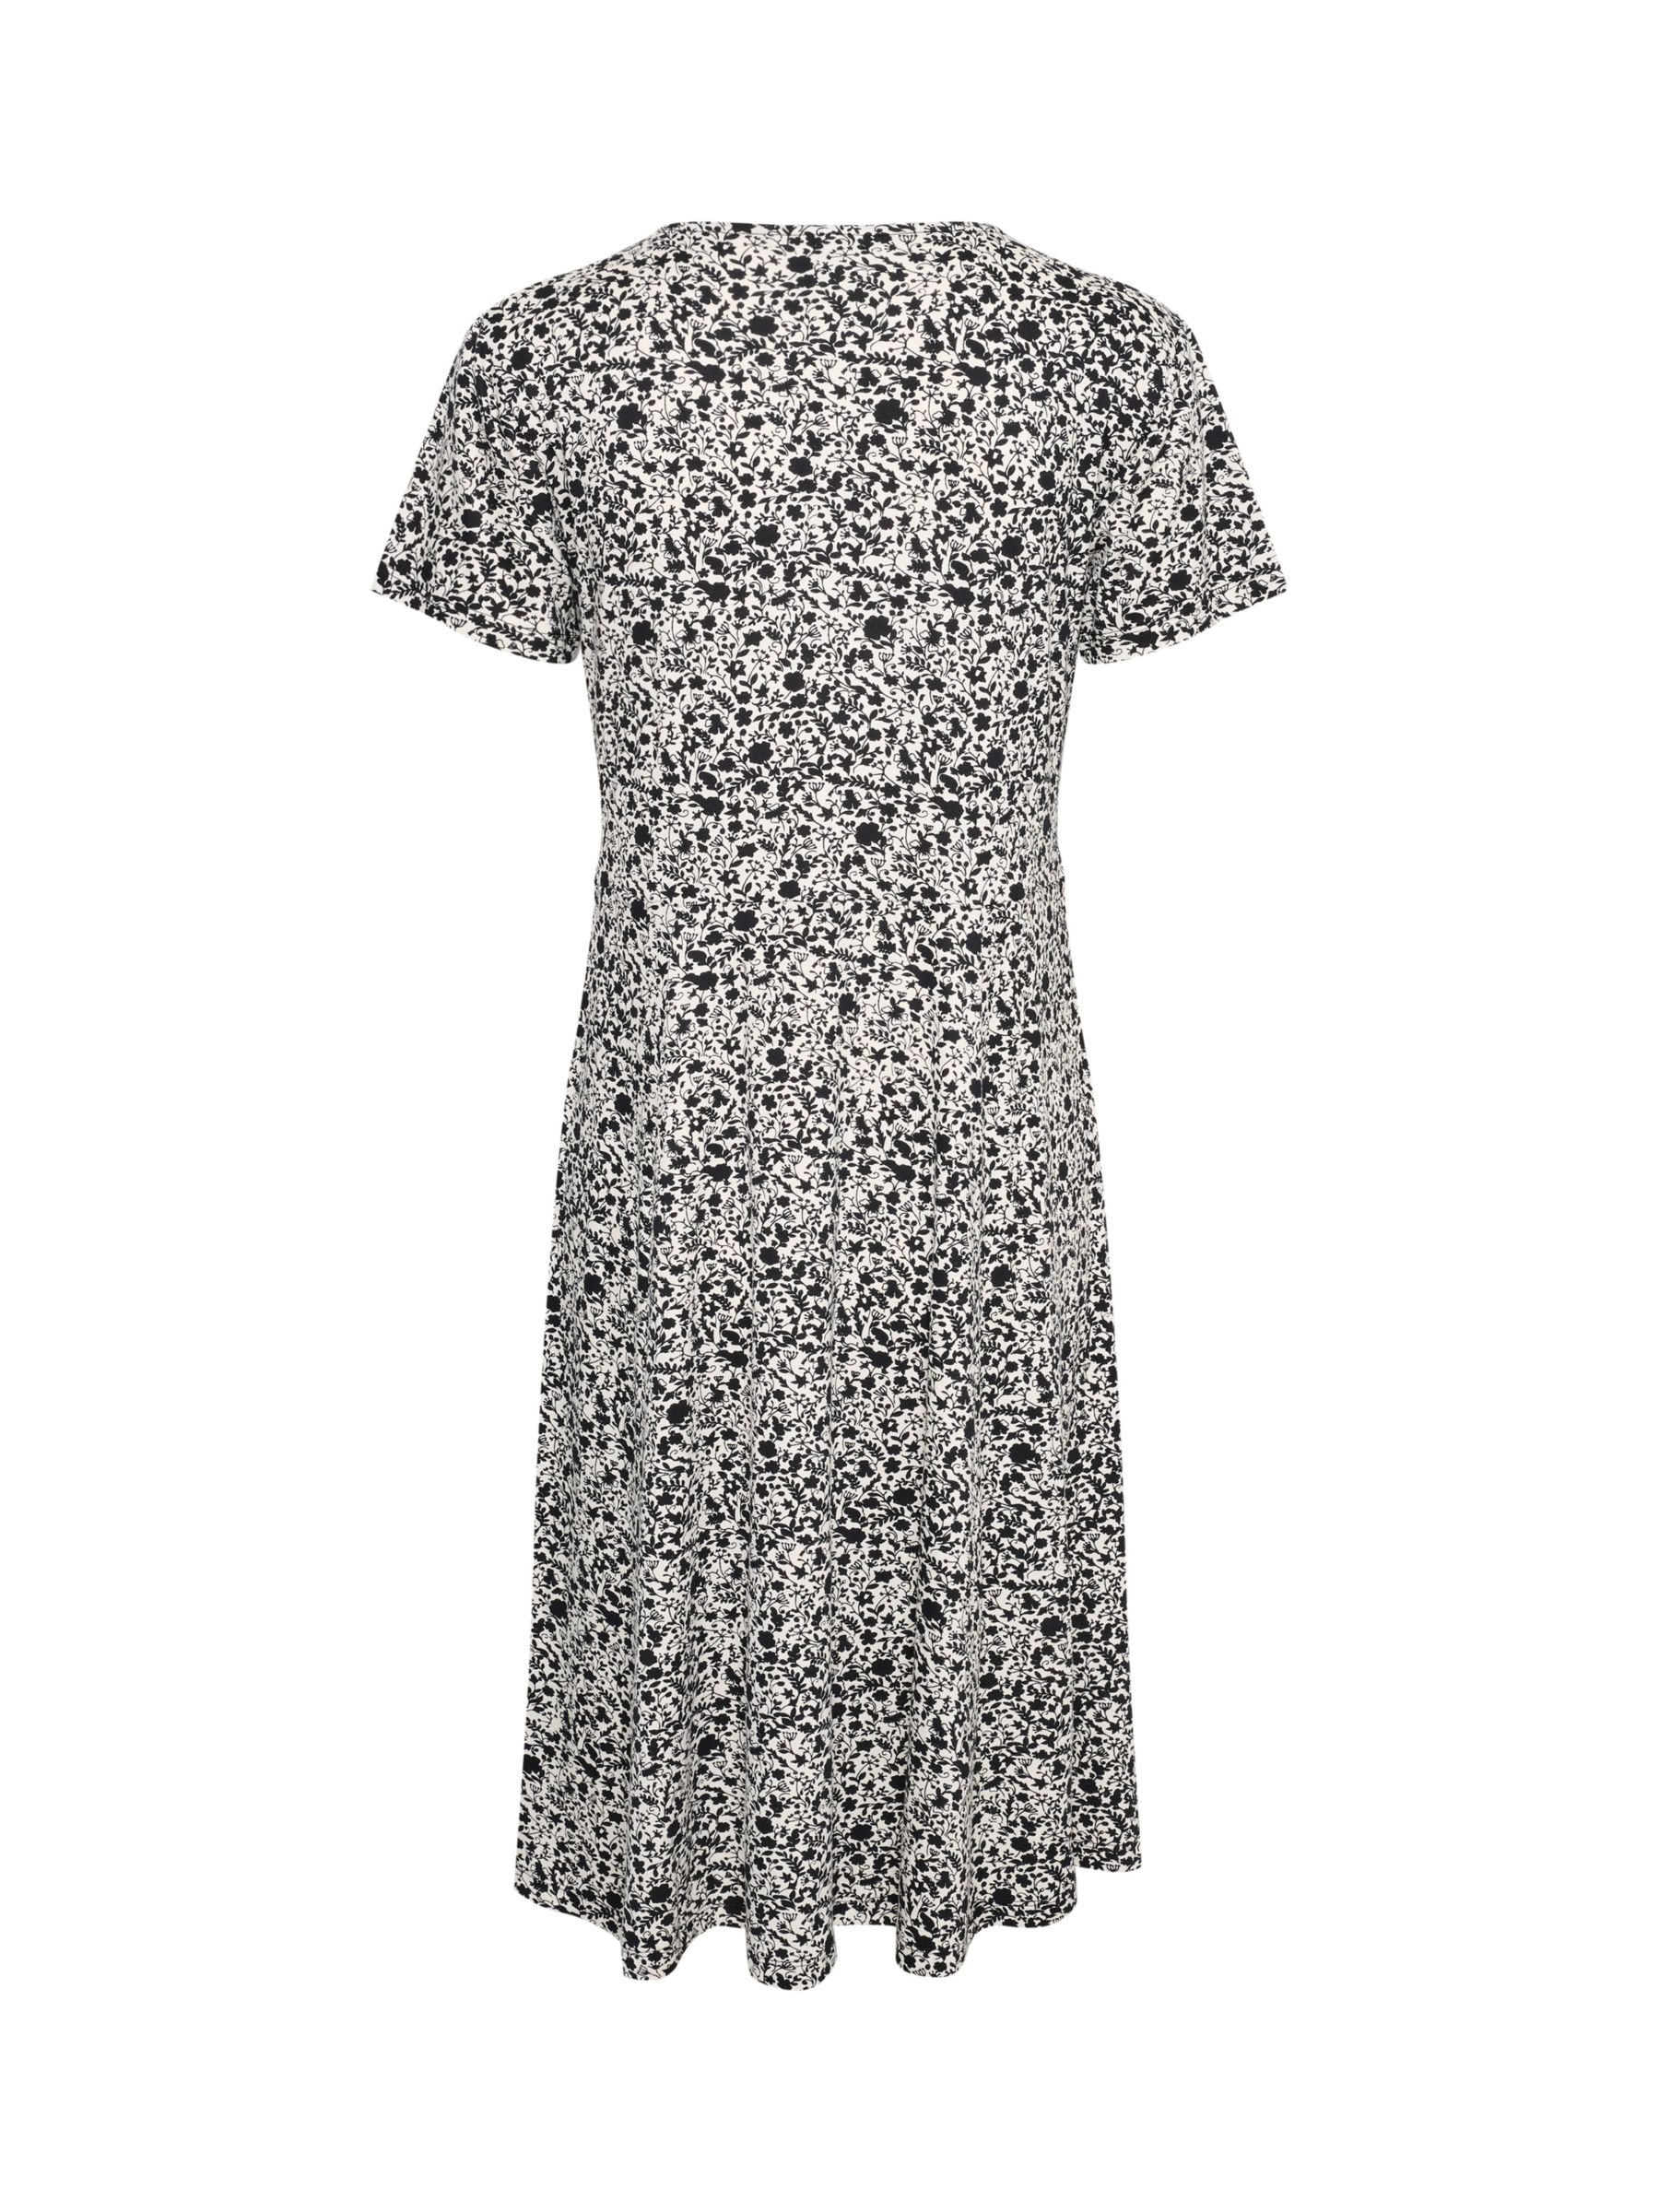 Buy KAFFE Mille Floral Print Jersey Dress, White/Black Online at johnlewis.com